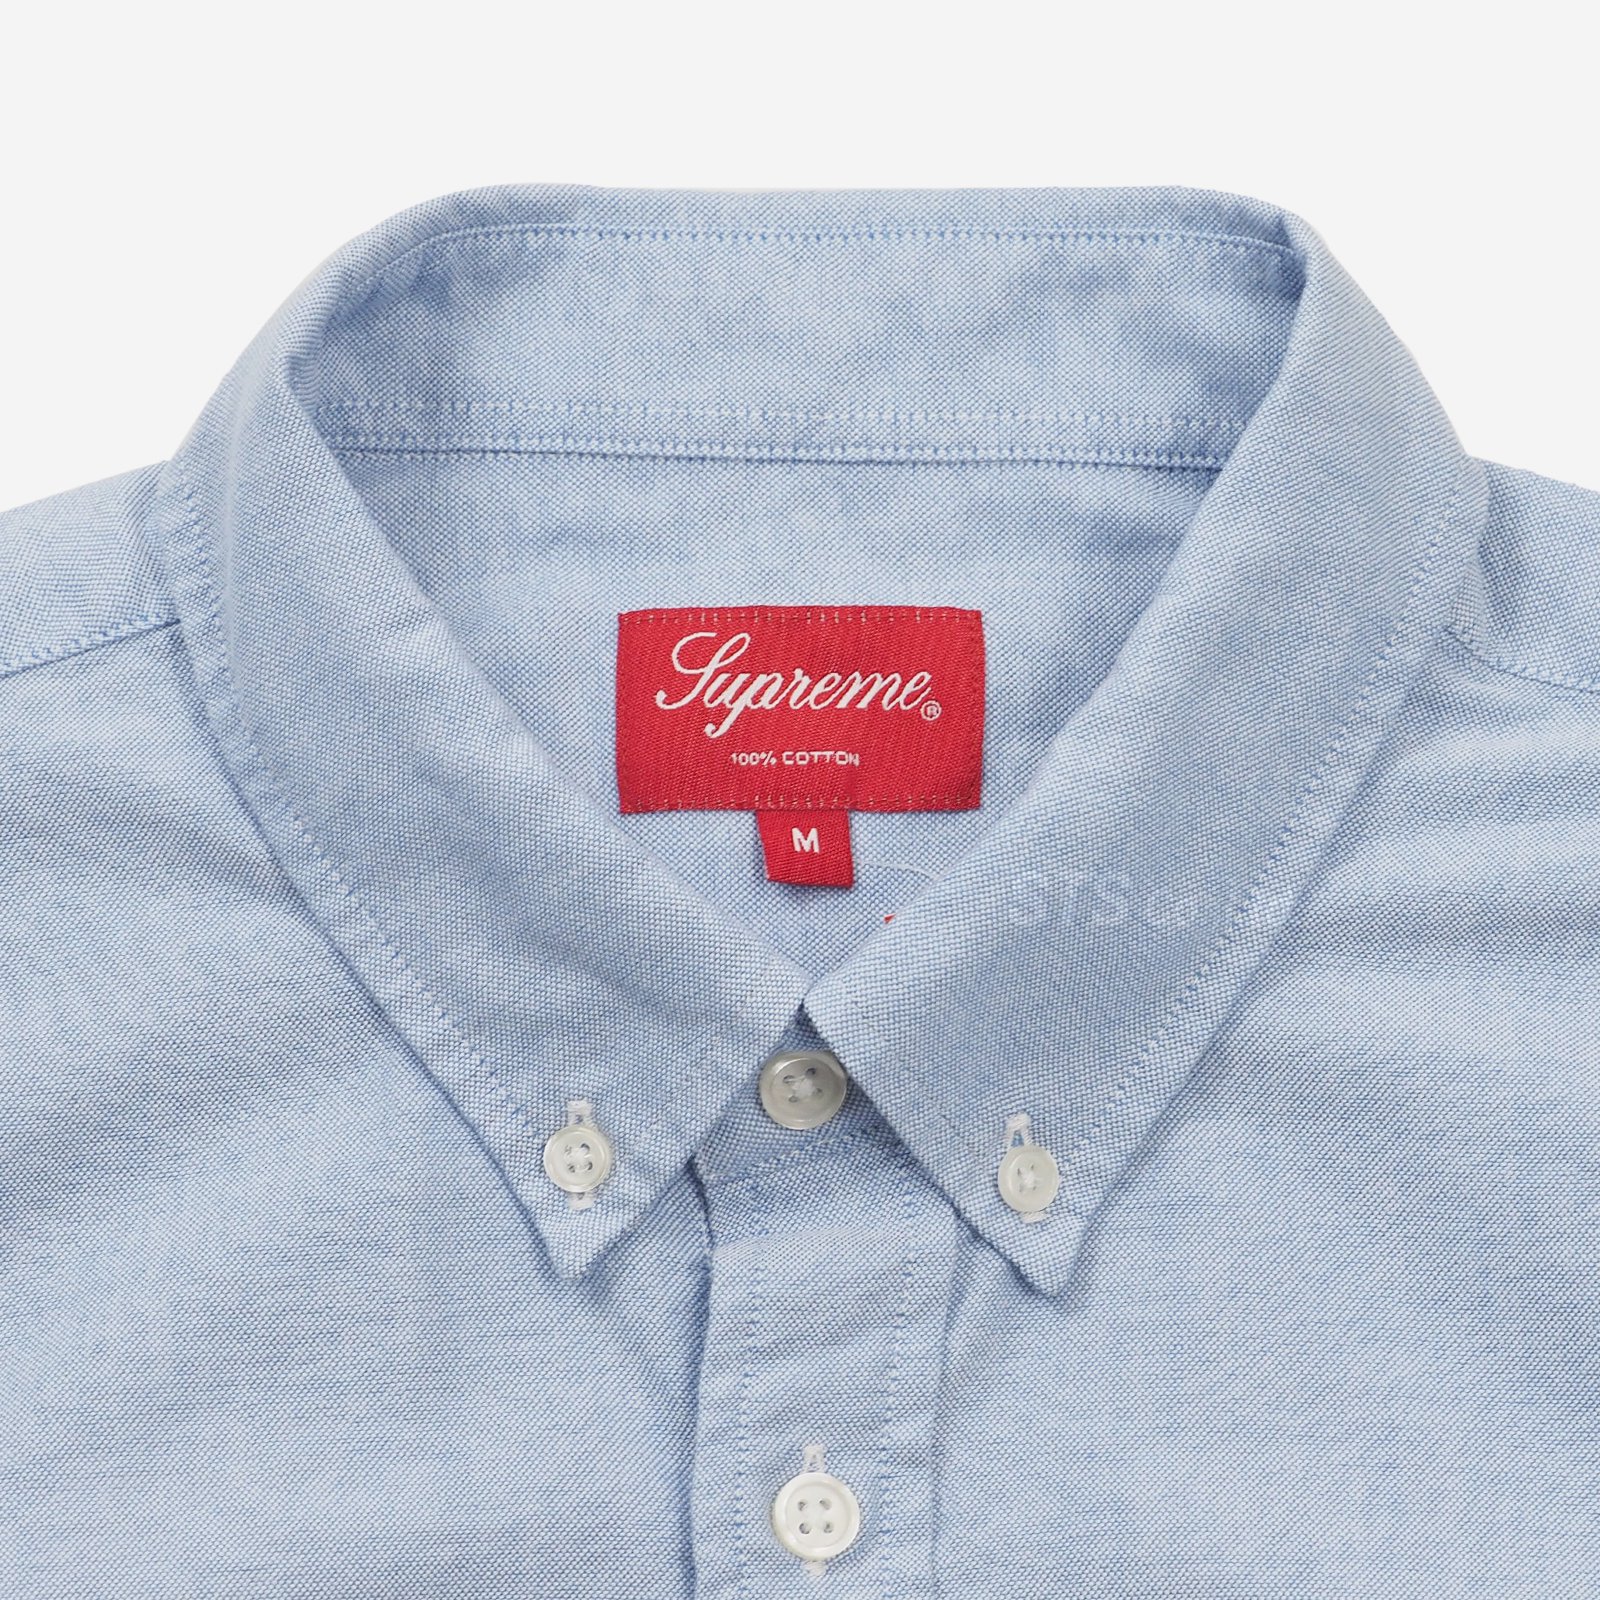 Supreme - Oxford Shirt - UG.SHAFT